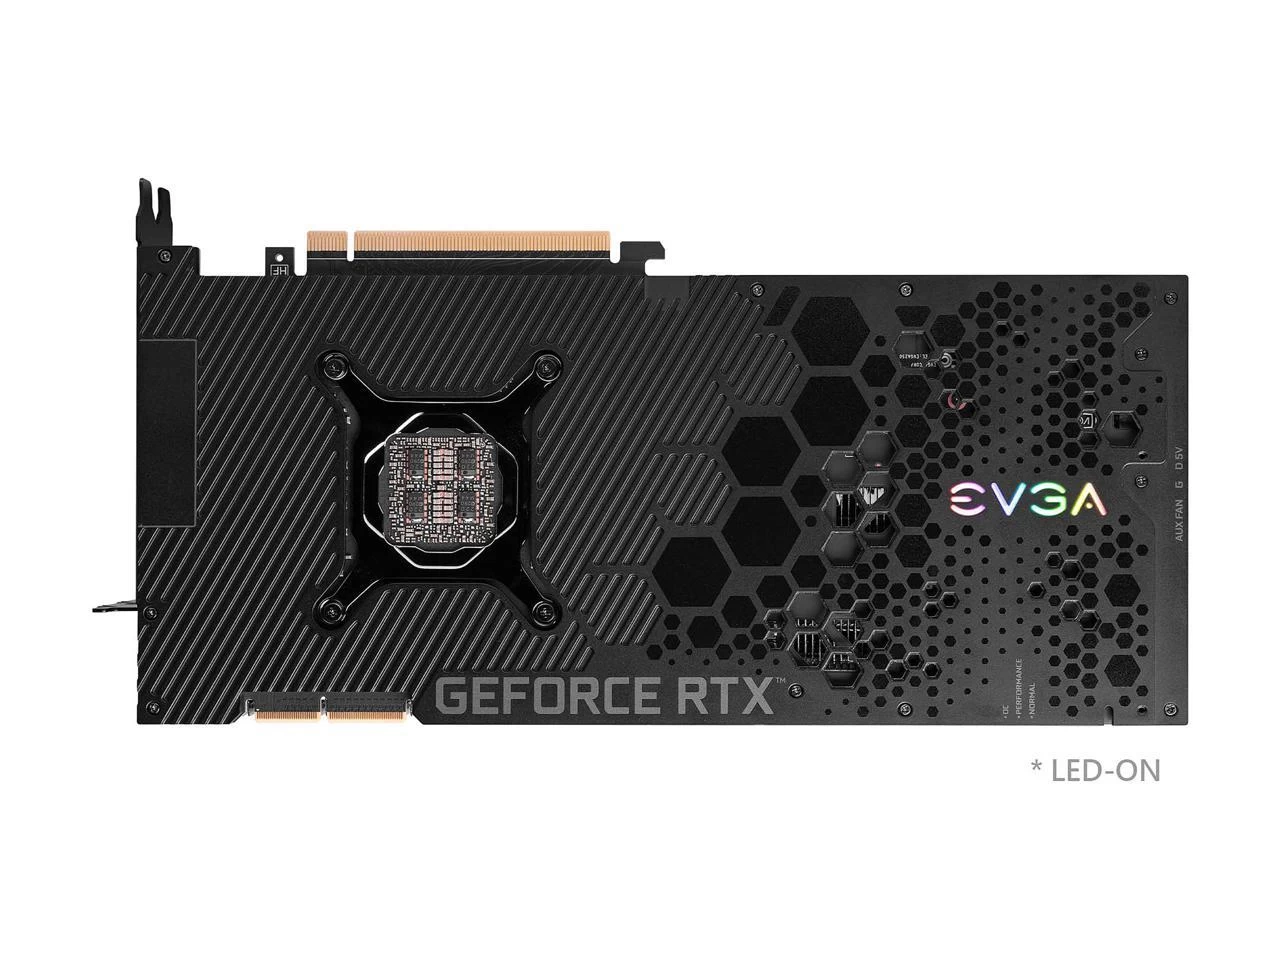 EVGA GeForce RTX 3090 Ti FTW3 BLACK GAMING Behind View